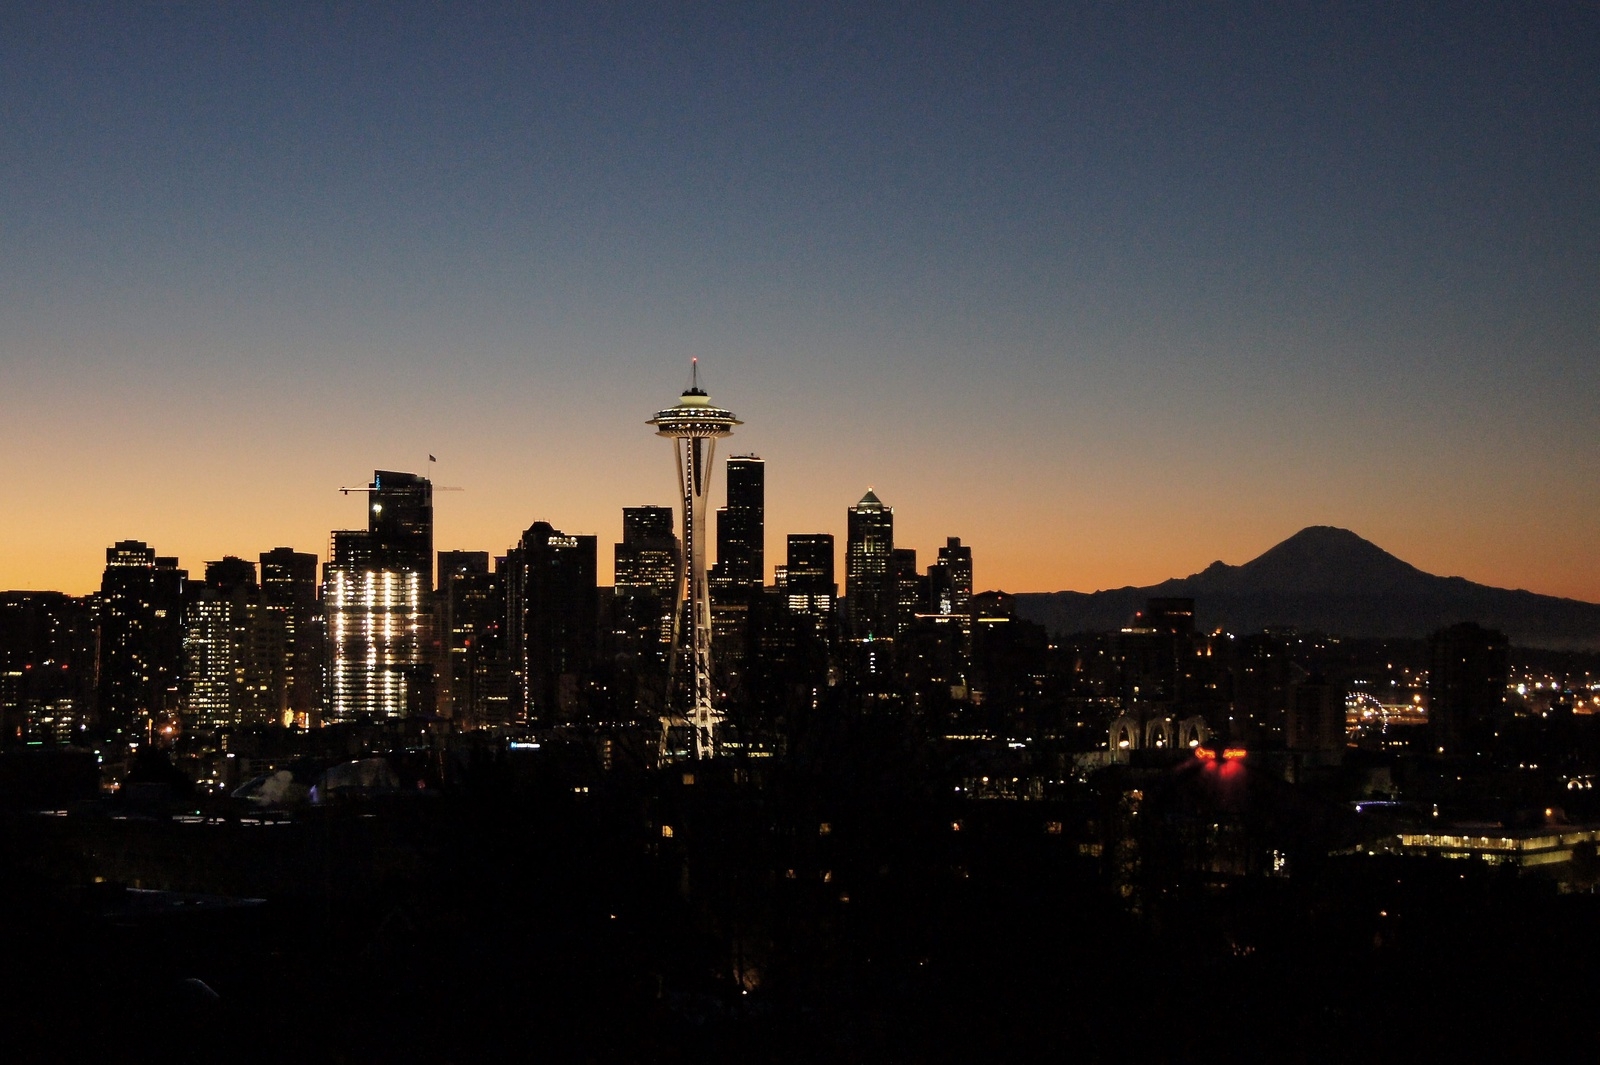 Space Needle lyser upp Seattle nattetid. Staden har många smeknamn som exempelvis The Emerald City, Queen City och The City of Goodwill. 
Privat bild